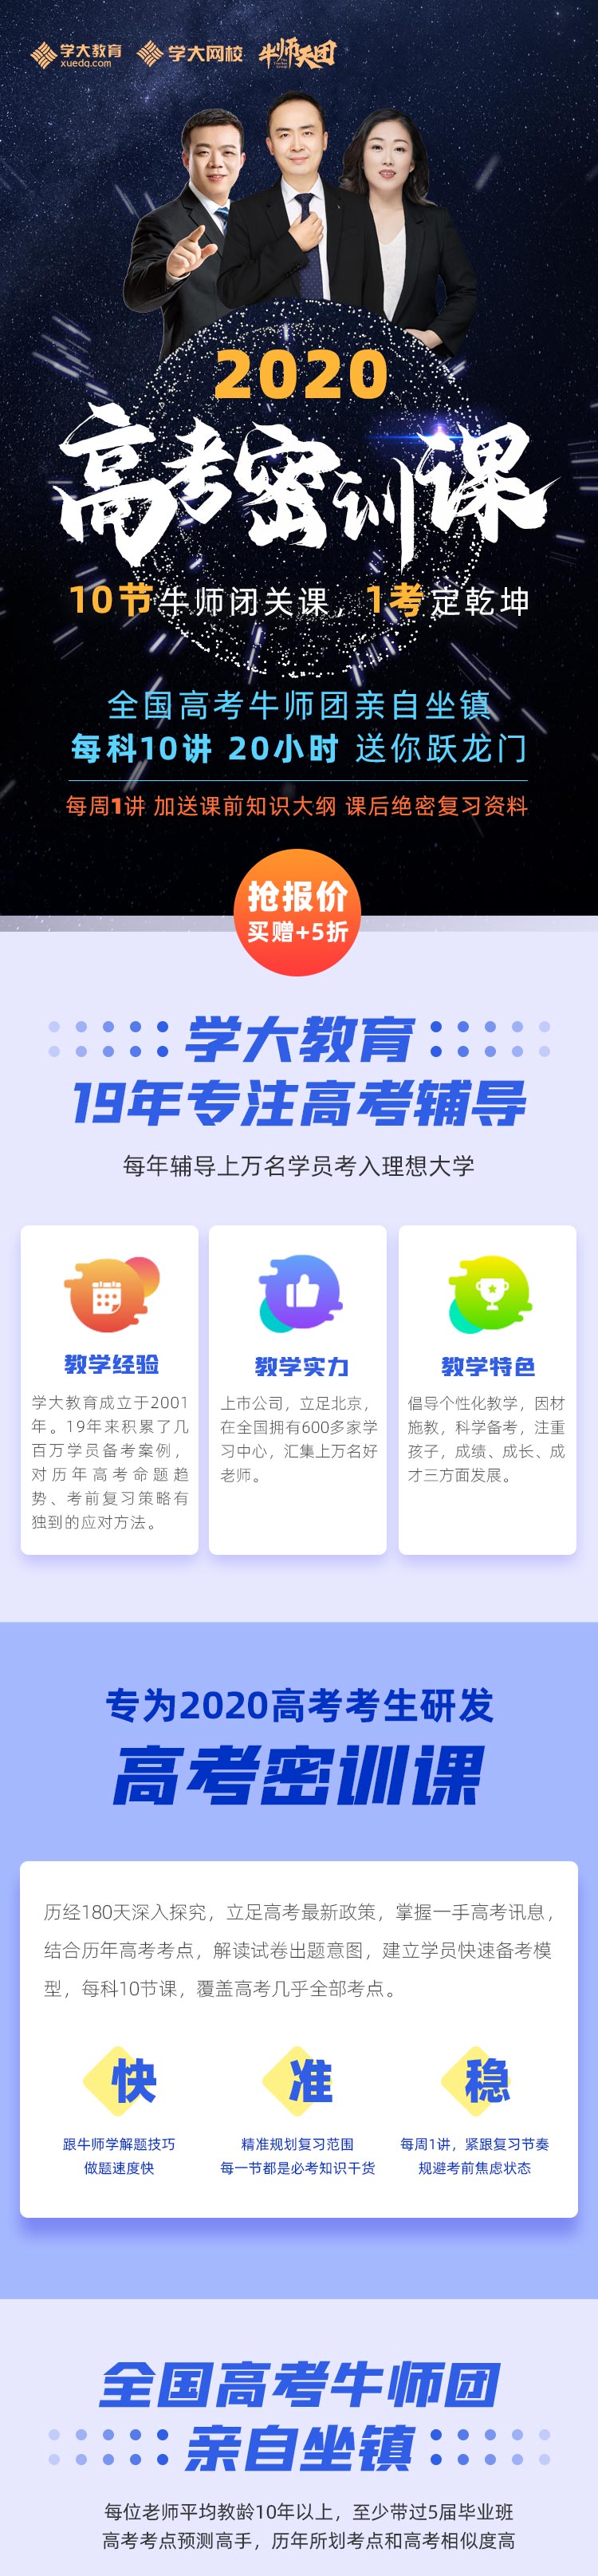 https://xdo-storage.oss-cn-beijing.aliyuncs.com/2020/03/09/xHgOzaWPZPRPoyKY8gOtMtonnoUK6pzUVtgqdyNf.jpeg